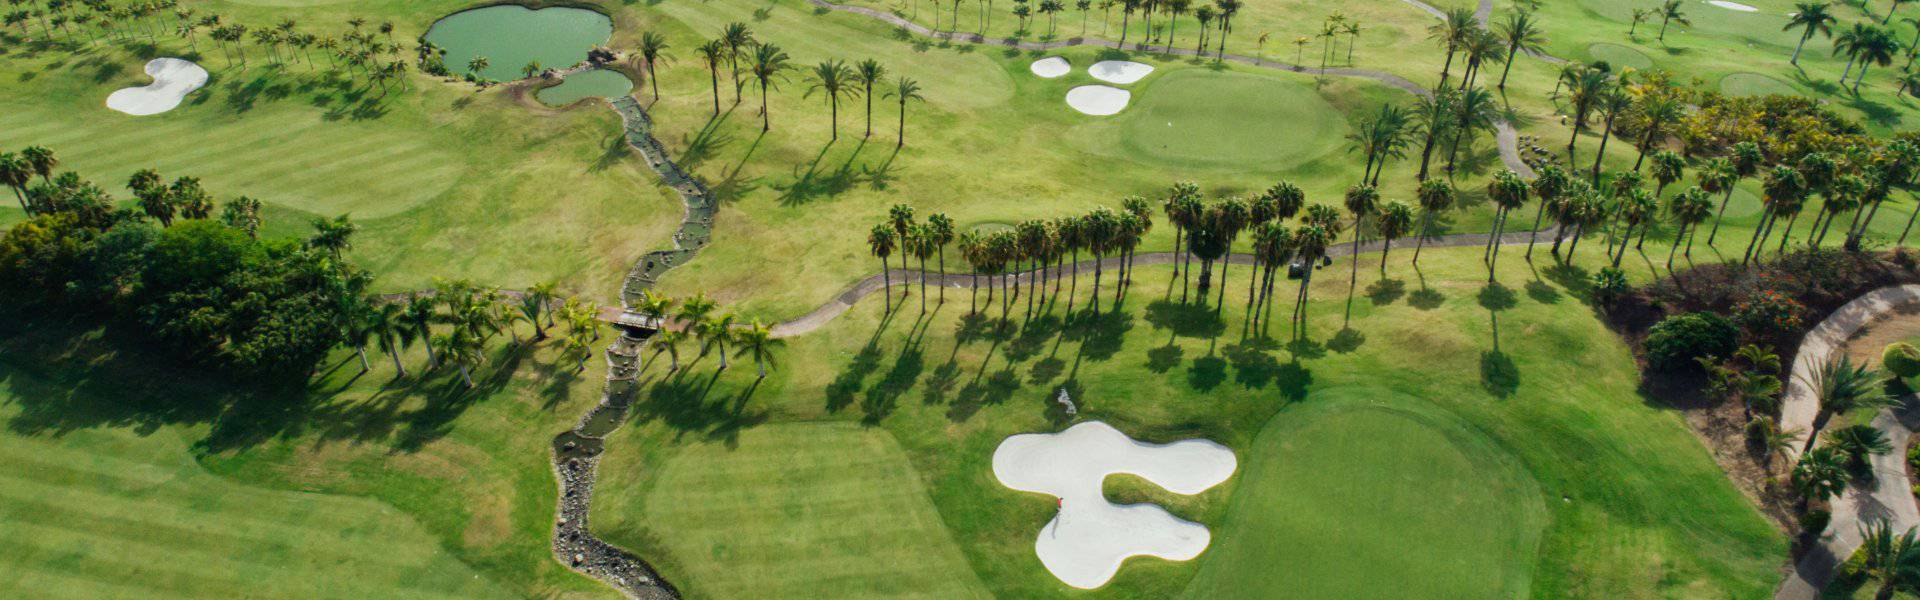 Abama Golf par Dave Thomas Abama Hotels